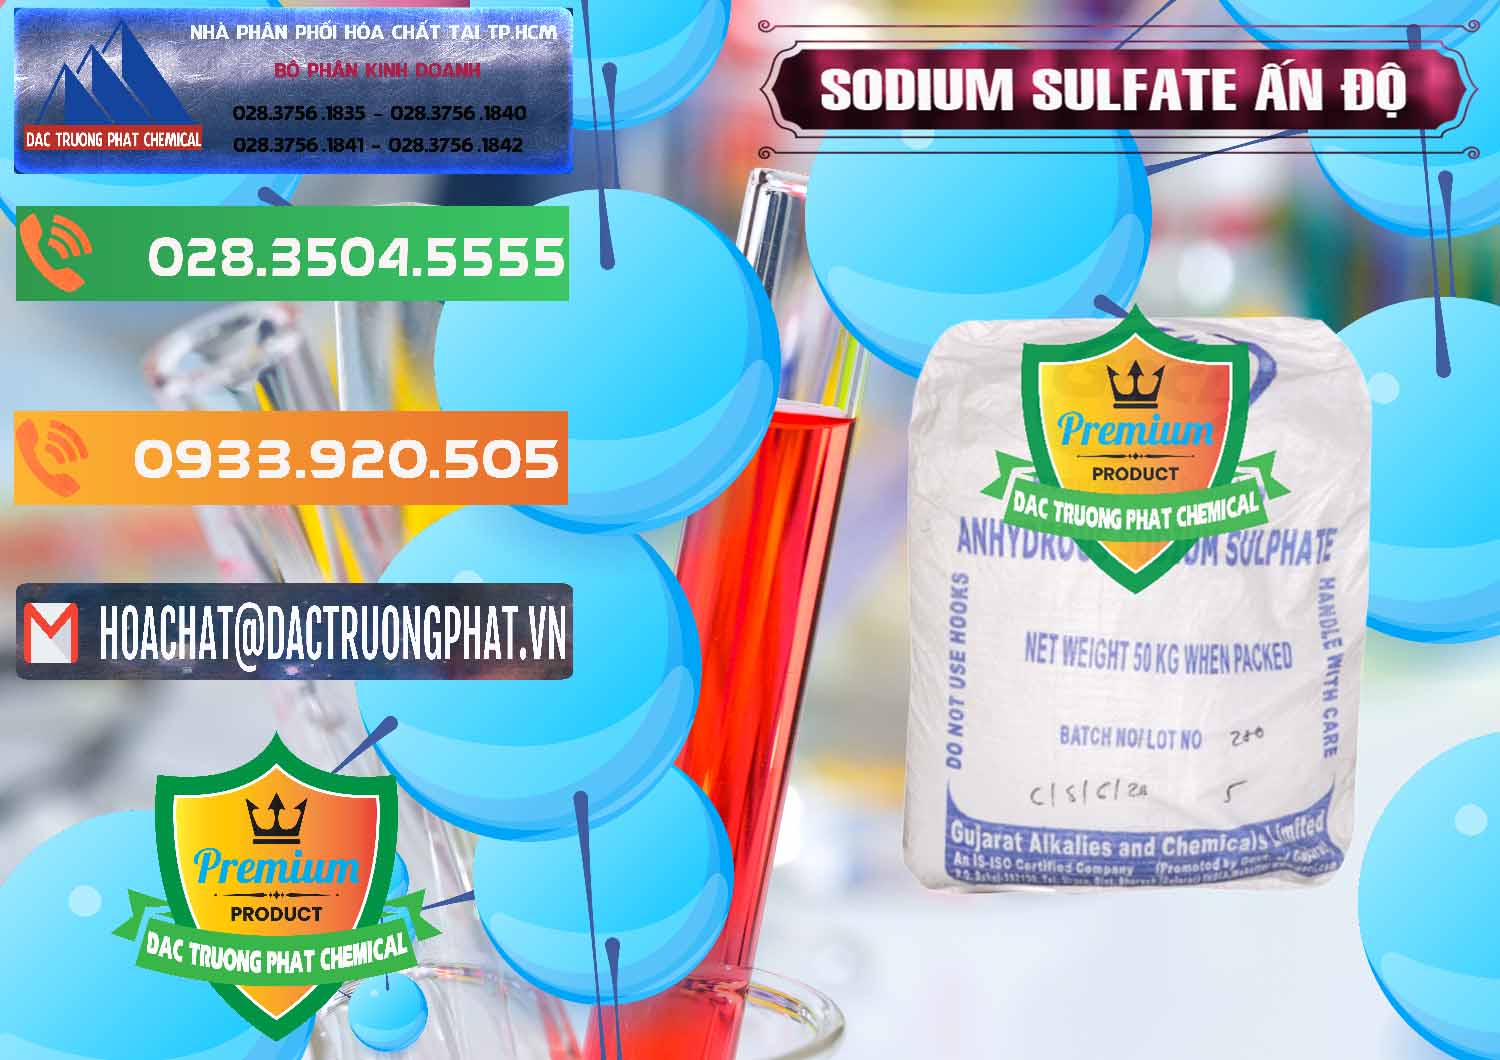 Nơi chuyên phân phối & bán Sodium Sulphate - Muối Sunfat Na2SO4 GACL Ấn Độ India - 0461 - Nơi bán & phân phối hóa chất tại TP.HCM - hoachatxulynuoc.com.vn